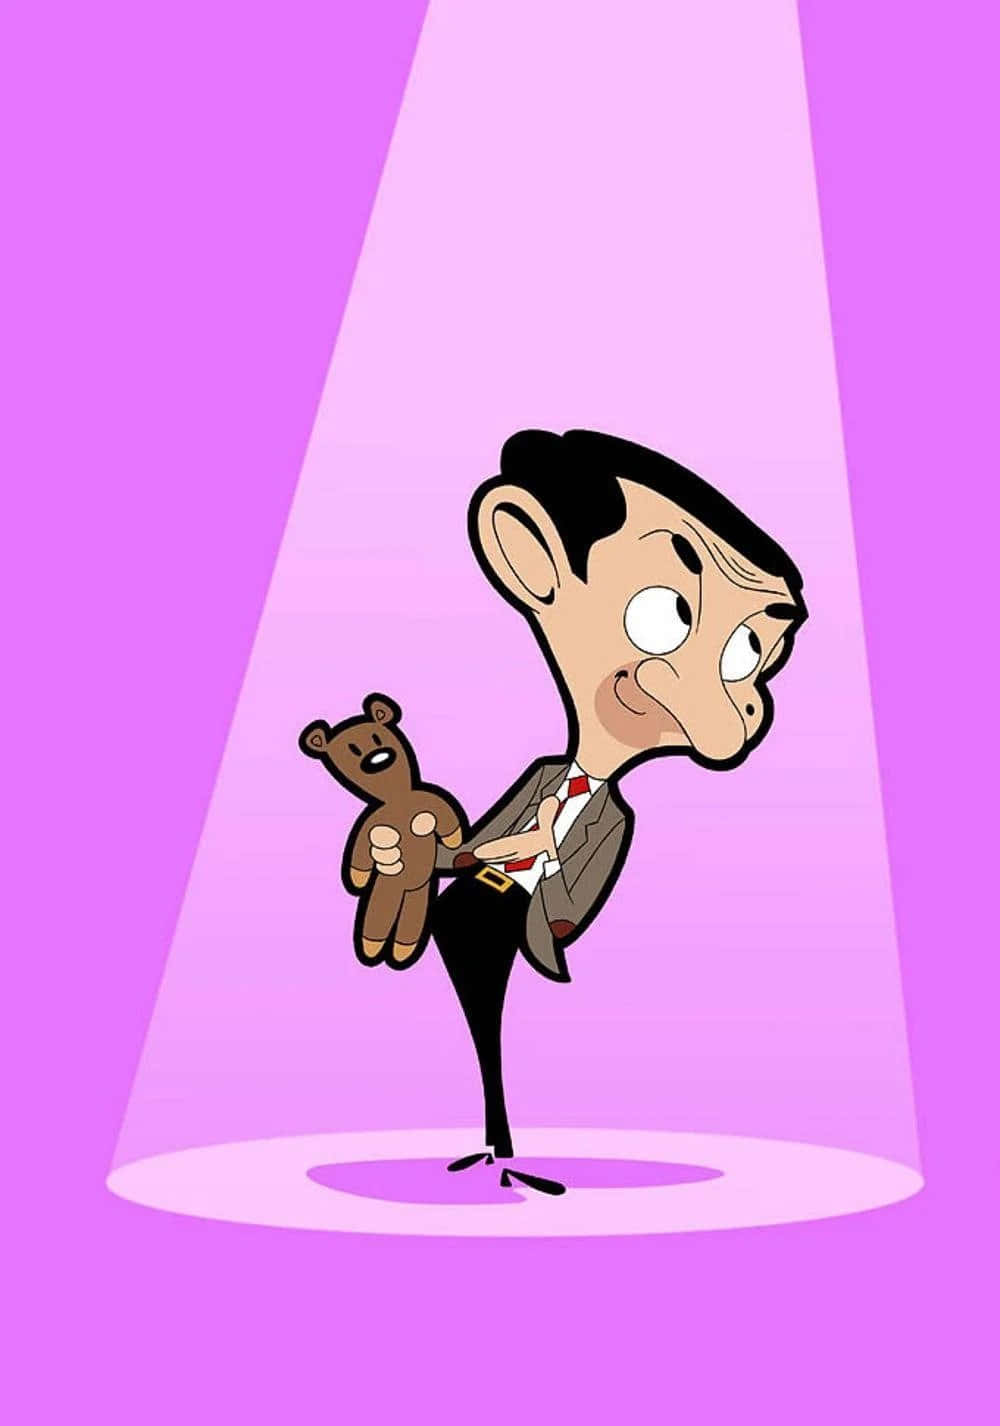 Ledivertenti Trovate Di Mr. Bean Immortalate Dalla Fotocamera.